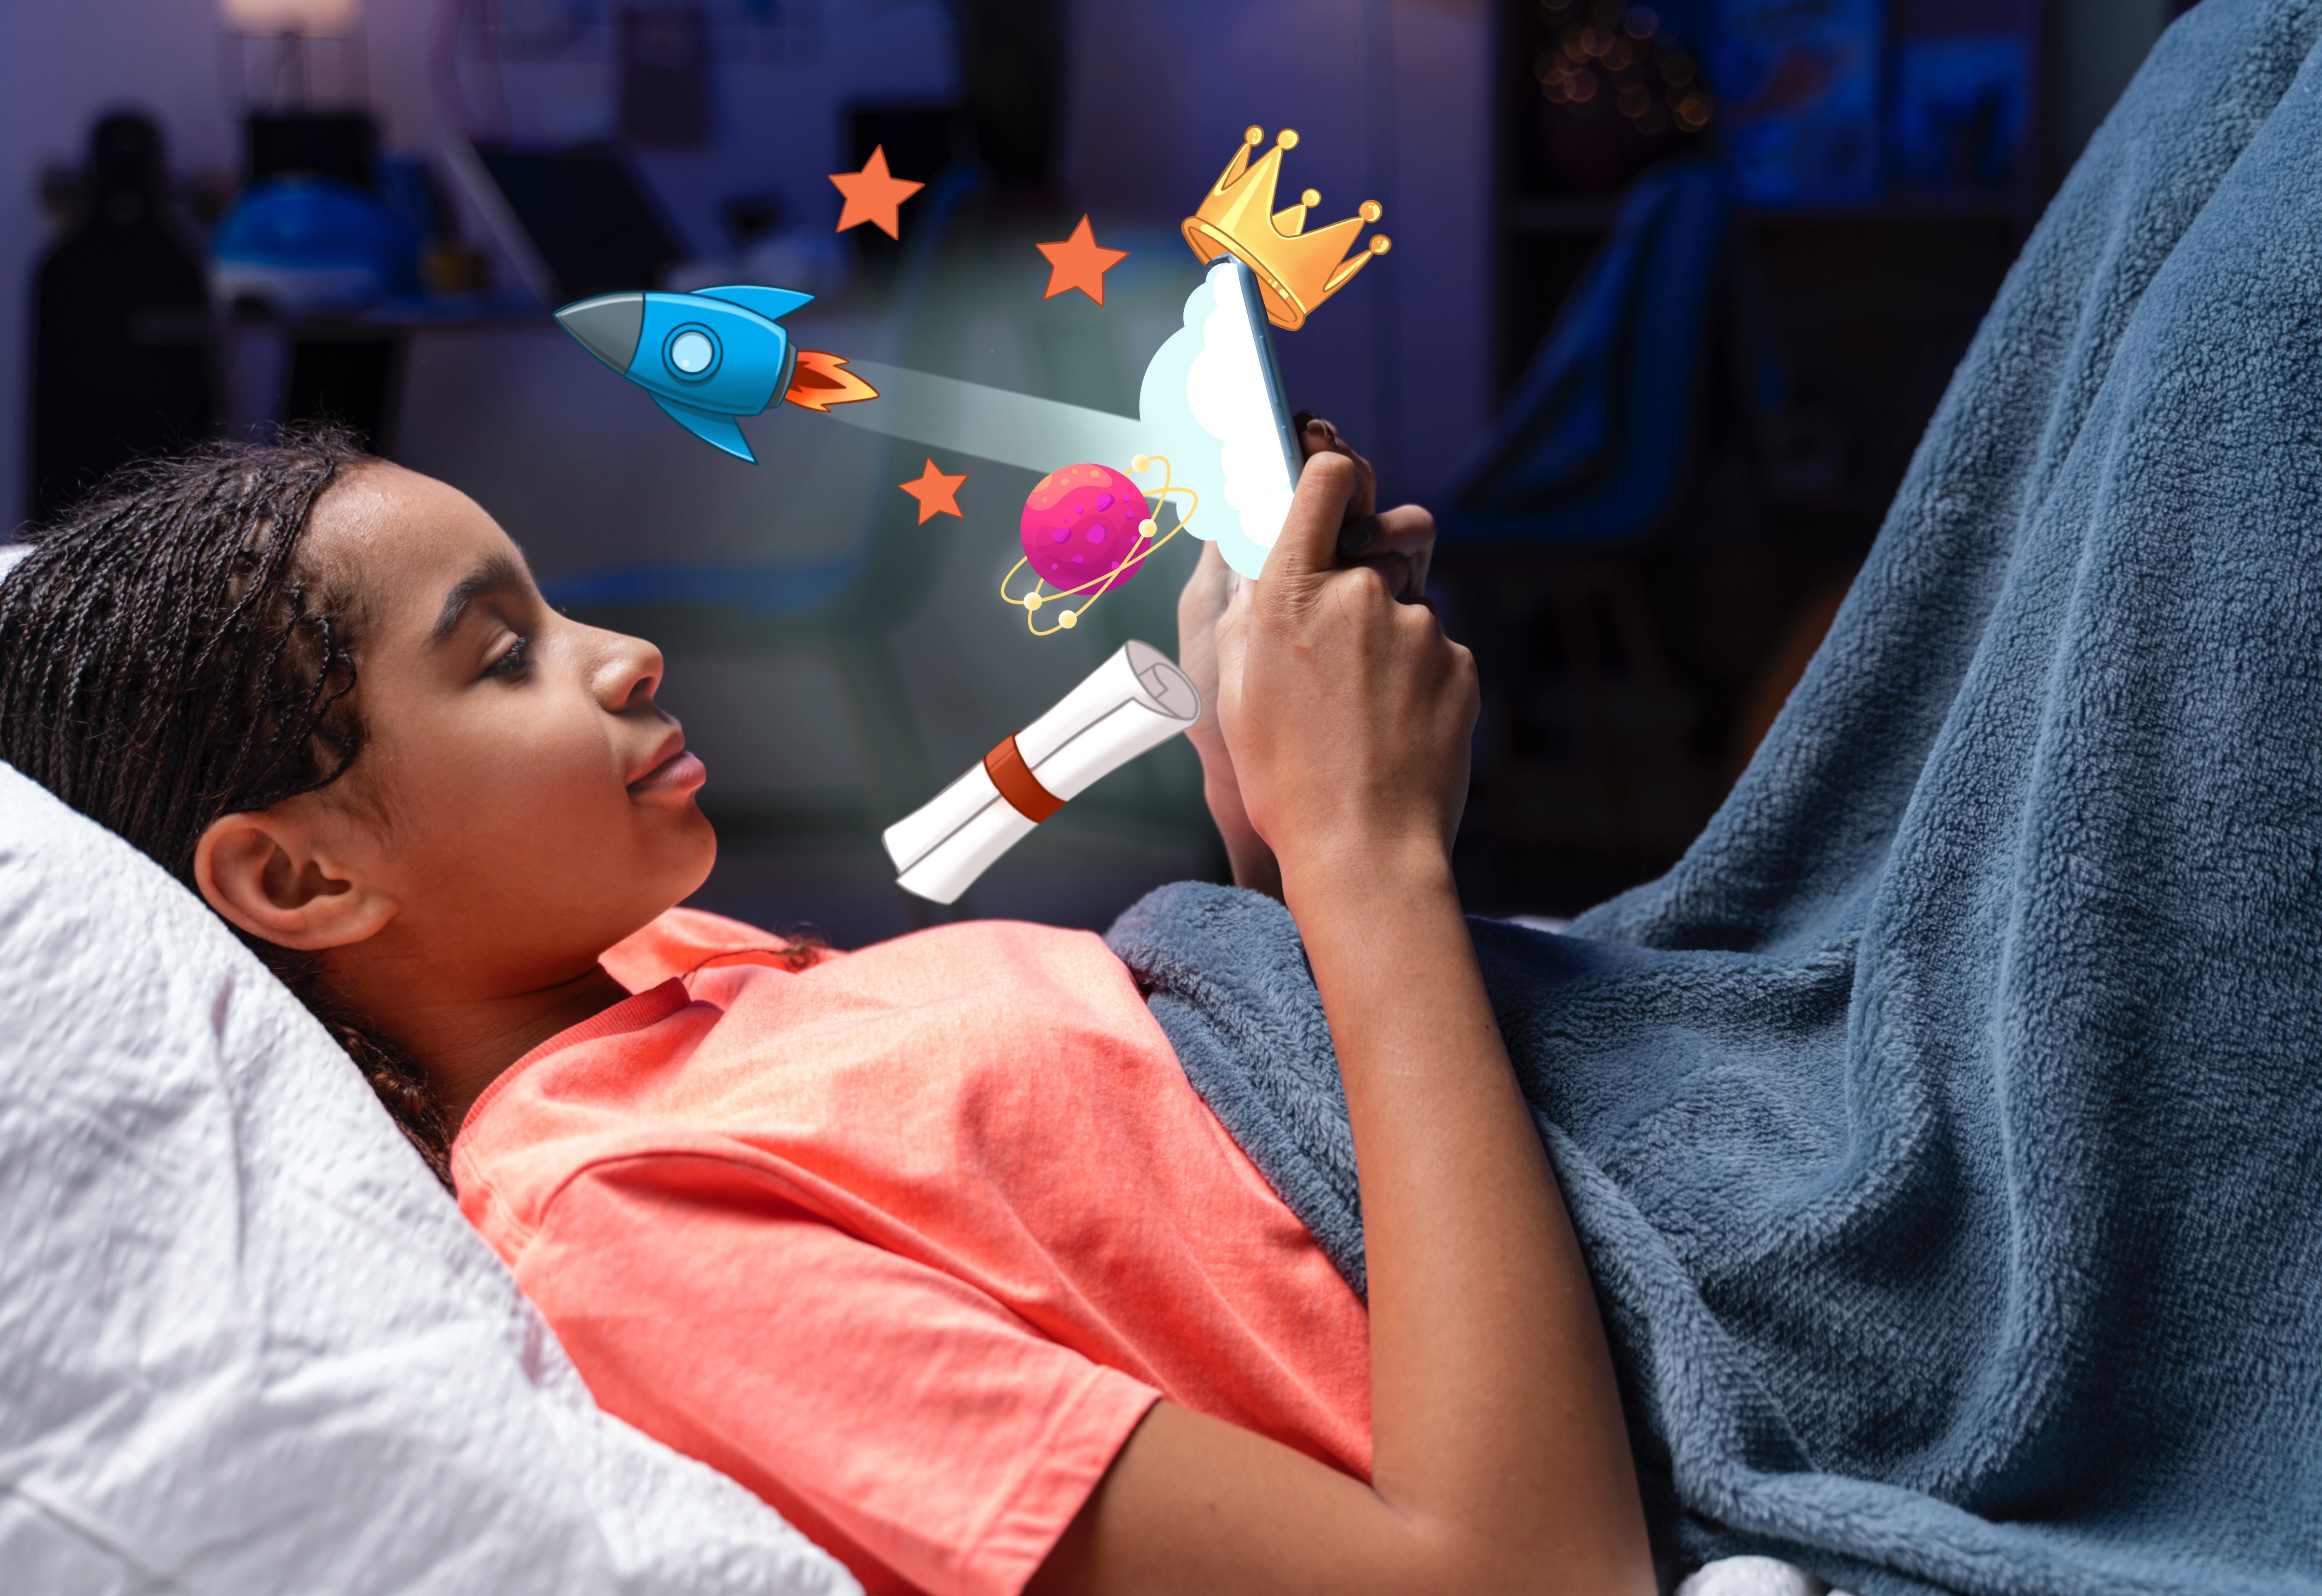 Imagem de uma adolescente deitada, mexendo no celular enquanto há ilustrações de um foguete, estrelas, coroa, planeta e diploma saindo da teça do celular.